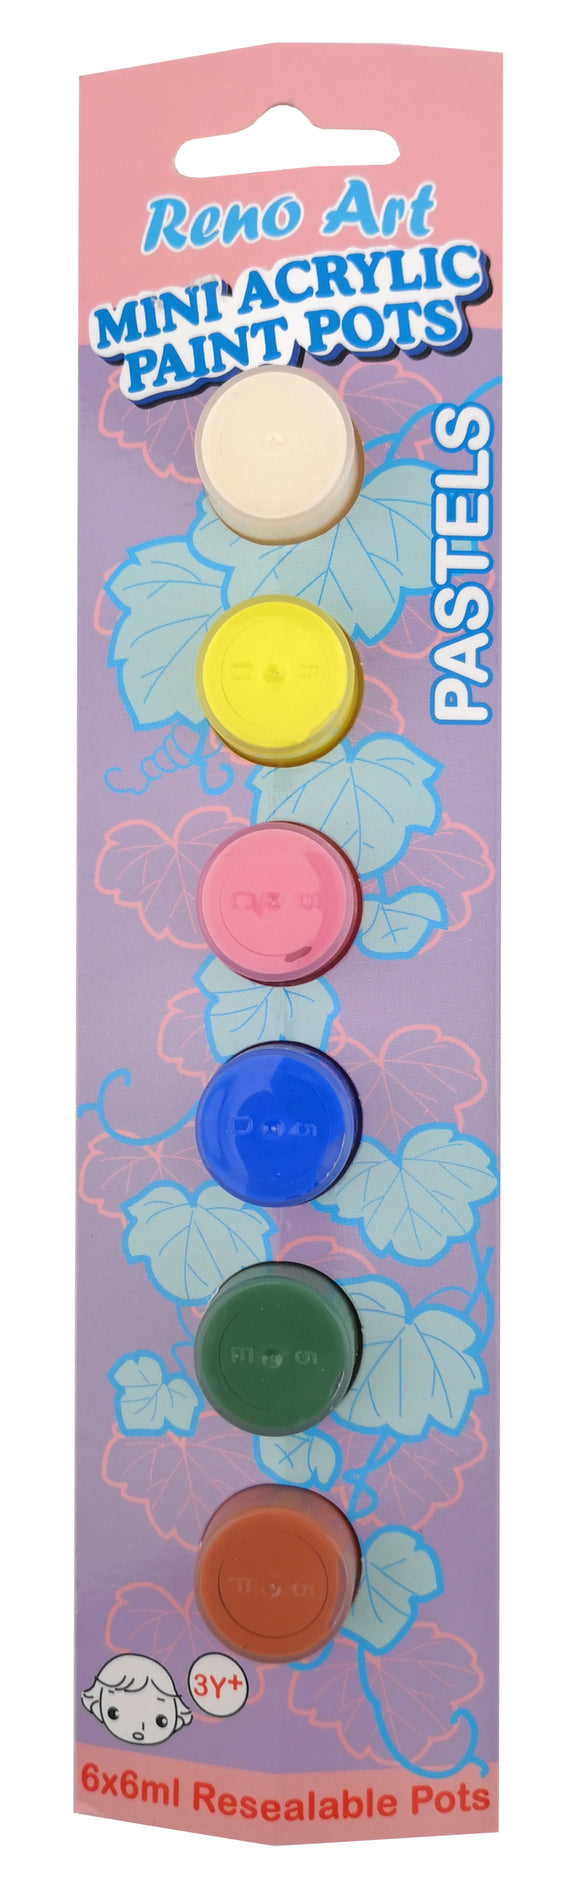 迷你亚克力颜料罐 (6ml) 6PK - 粉彩